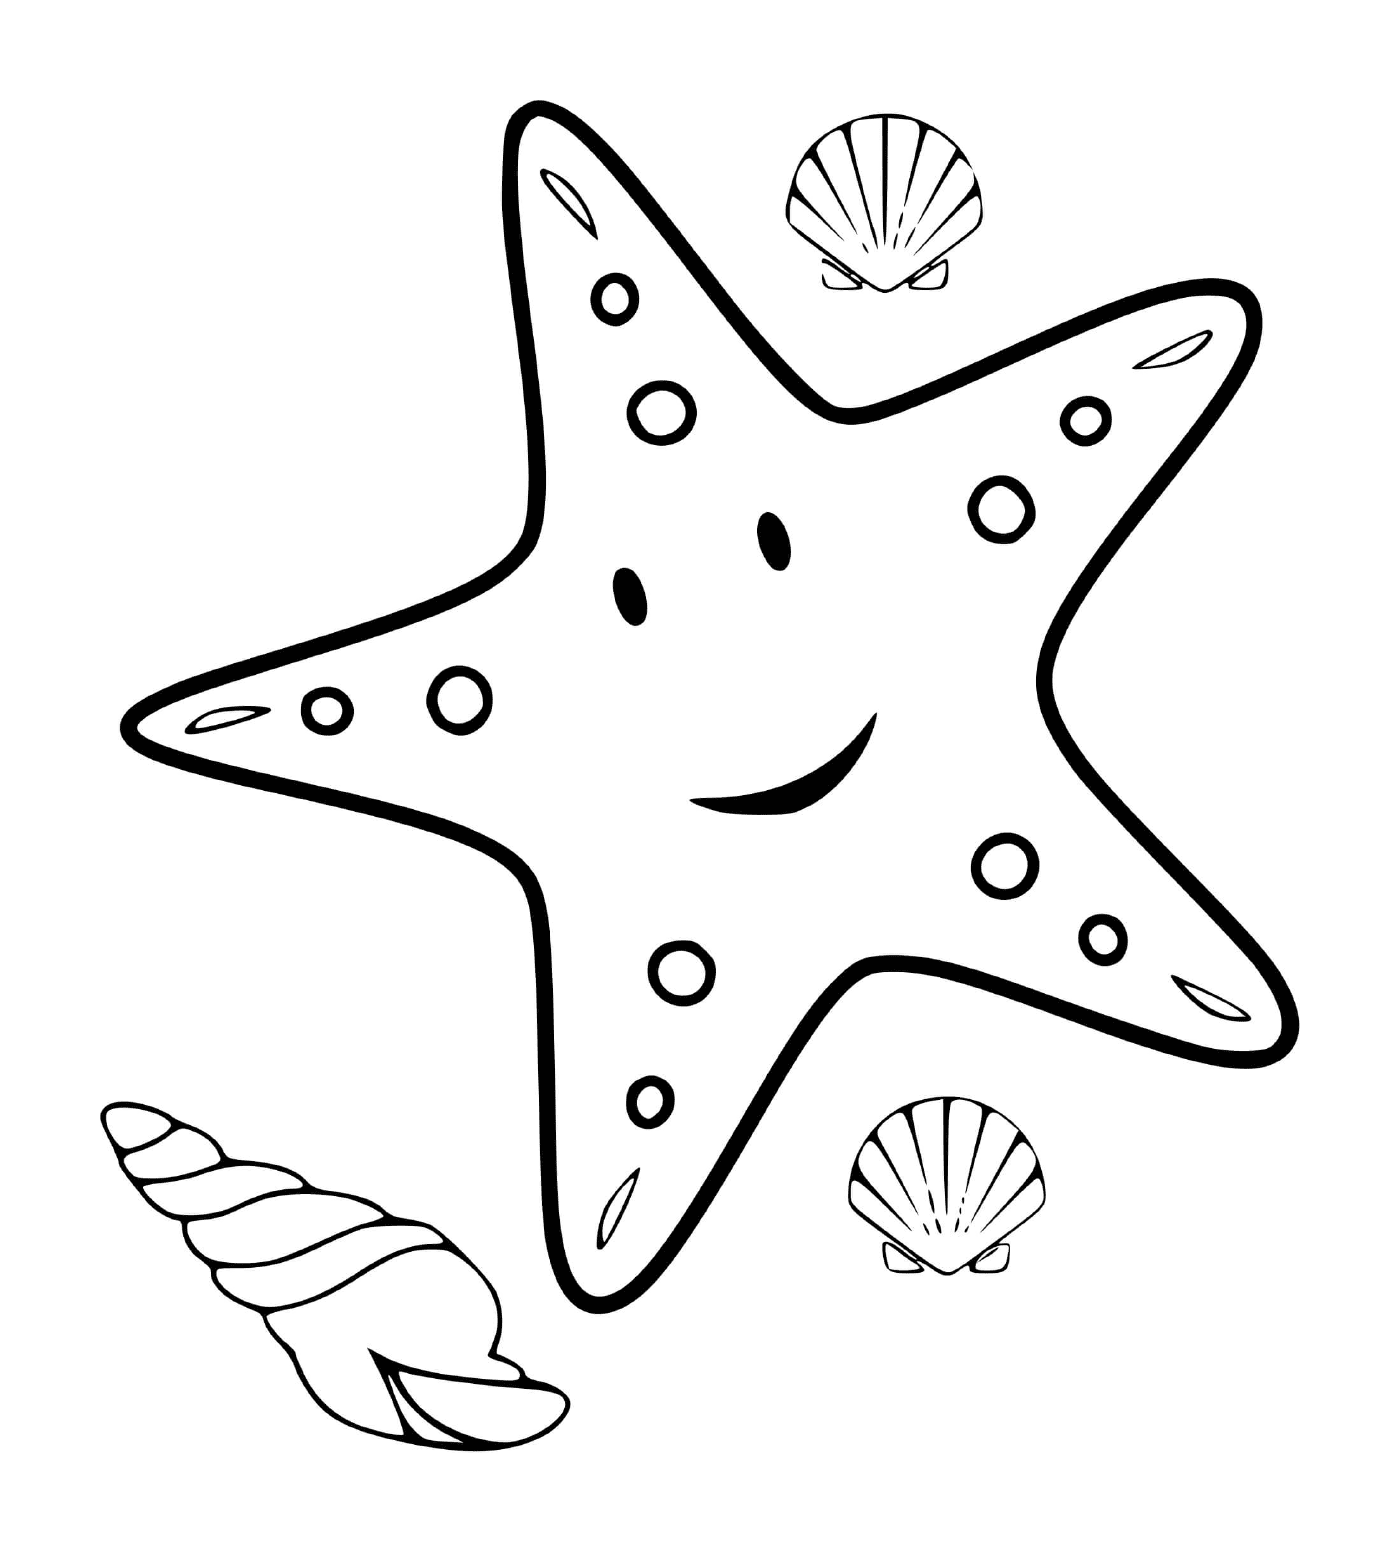  Uma estrela do mar e do marisco 